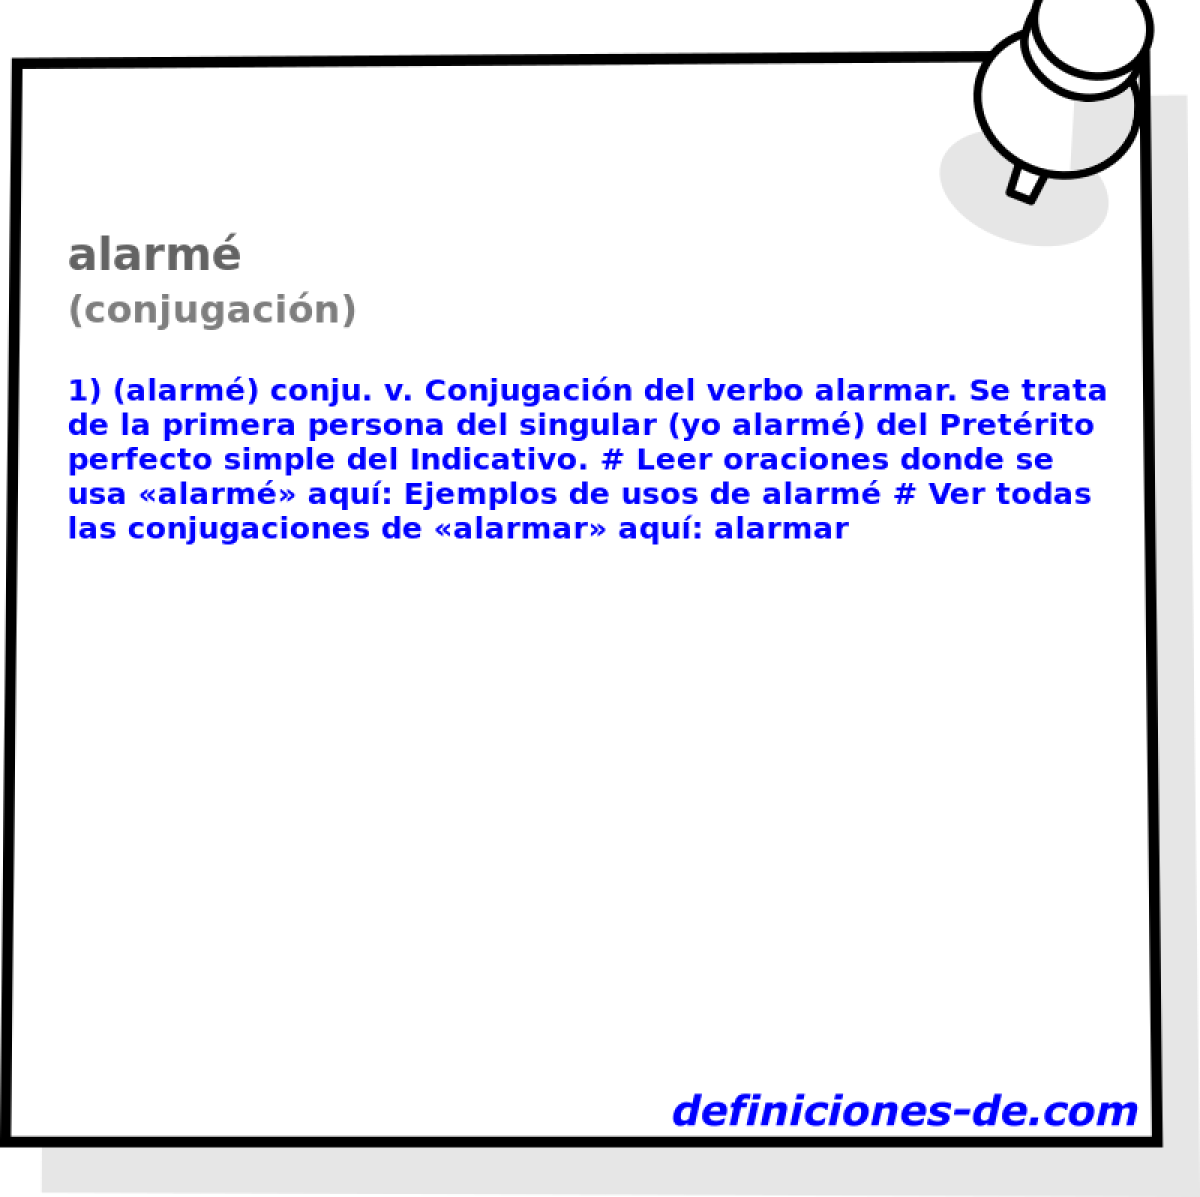 alarm (conjugacin)